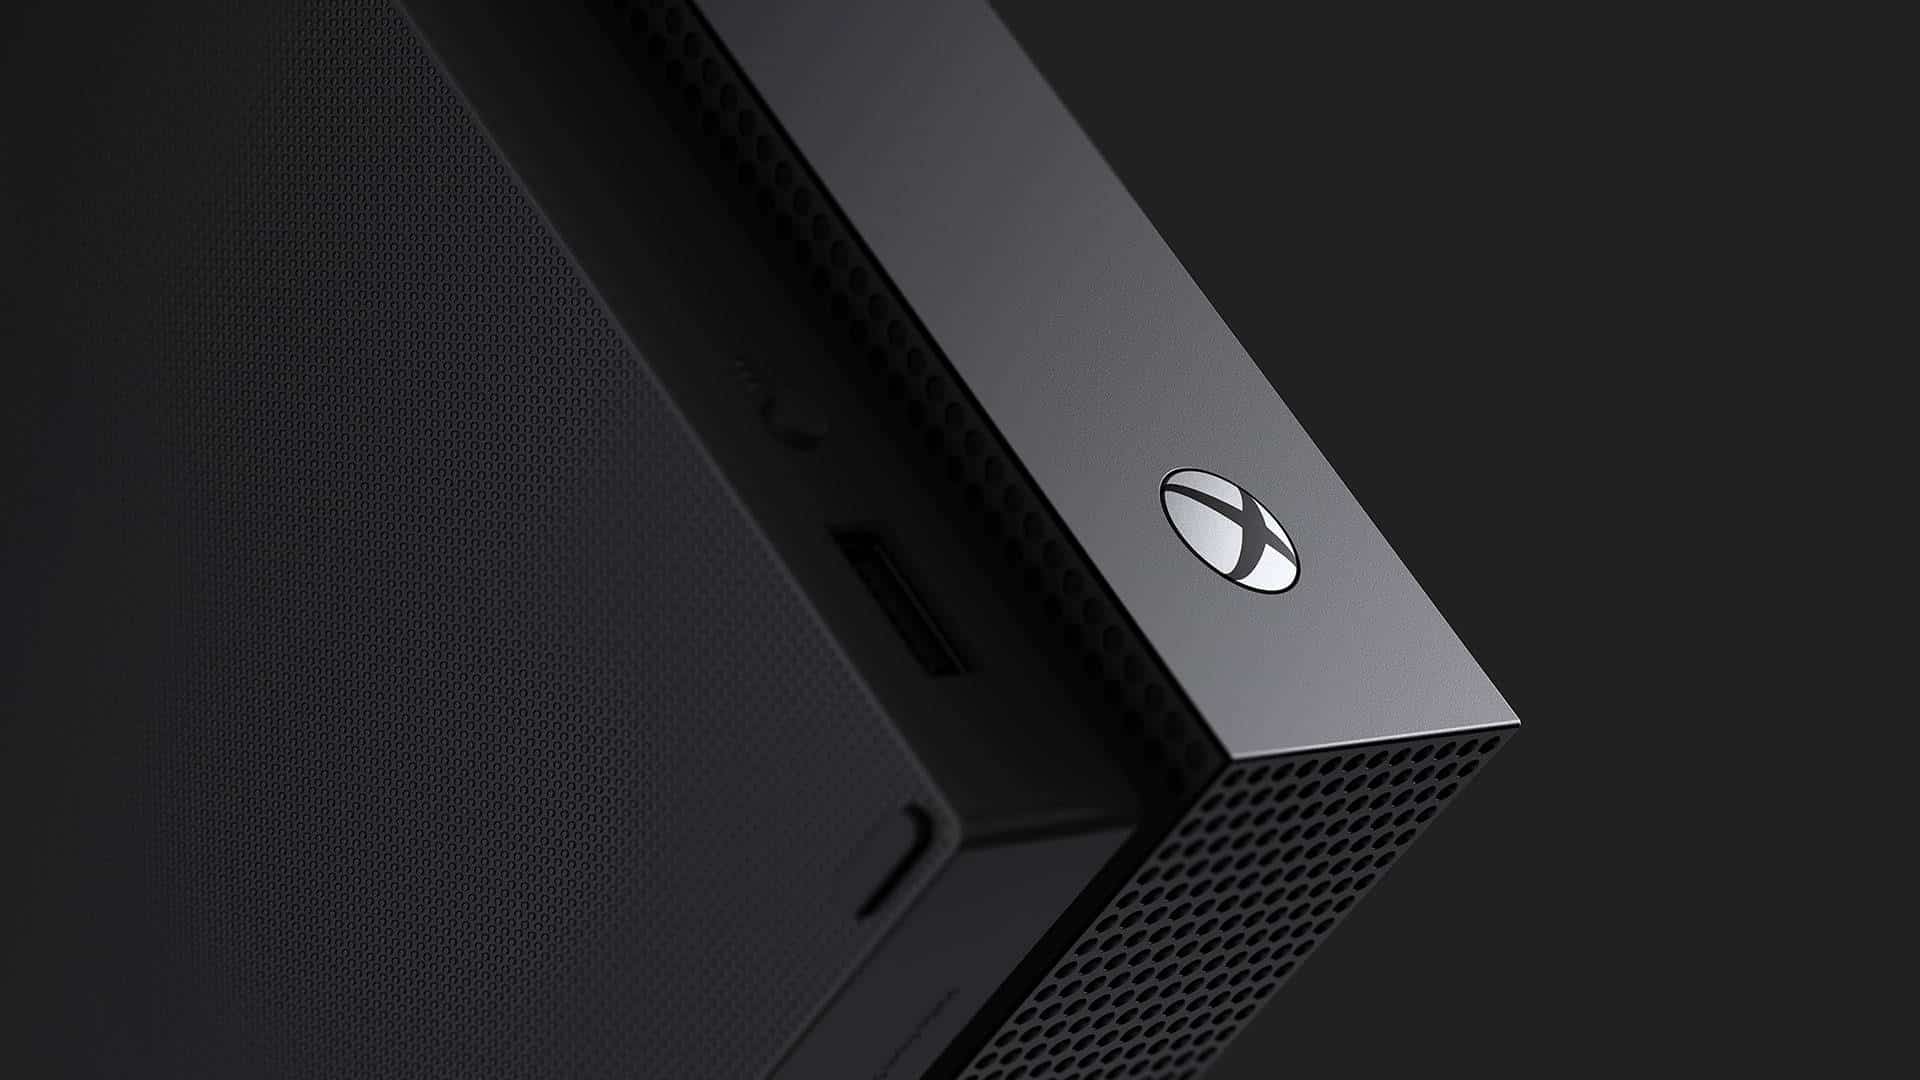 Réparation Xbox One X surchauffe : Comment réagir ?